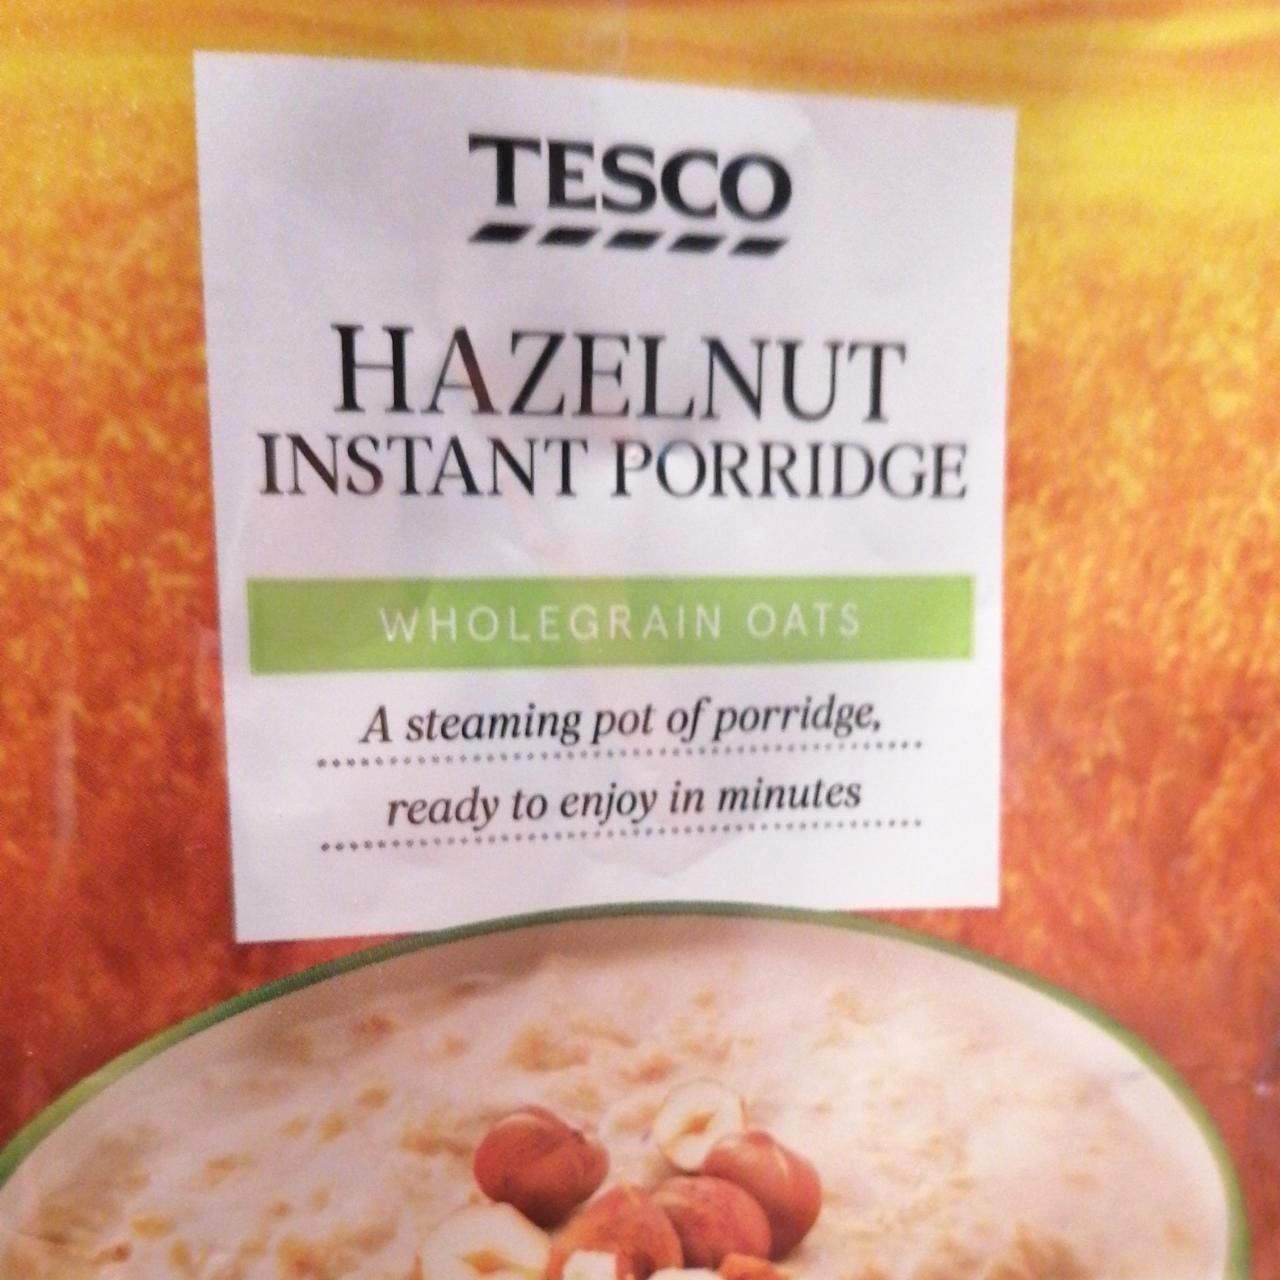 Képek - Hazelnut instant porridge Tesco